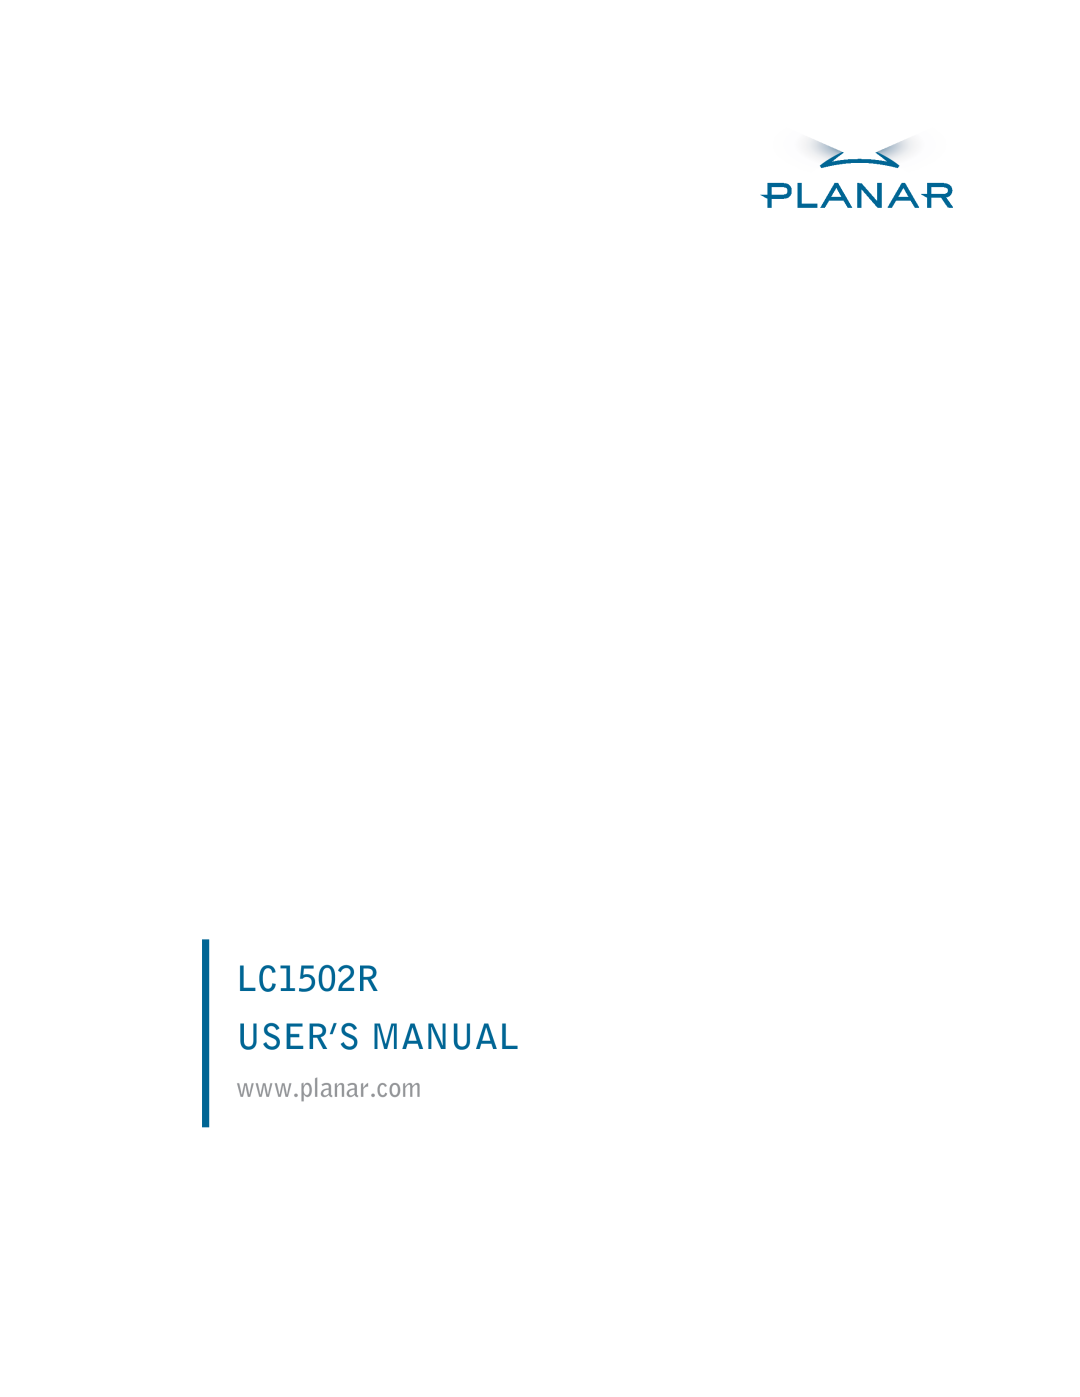 Planar user manual LC1502R USER’S MANUAL 